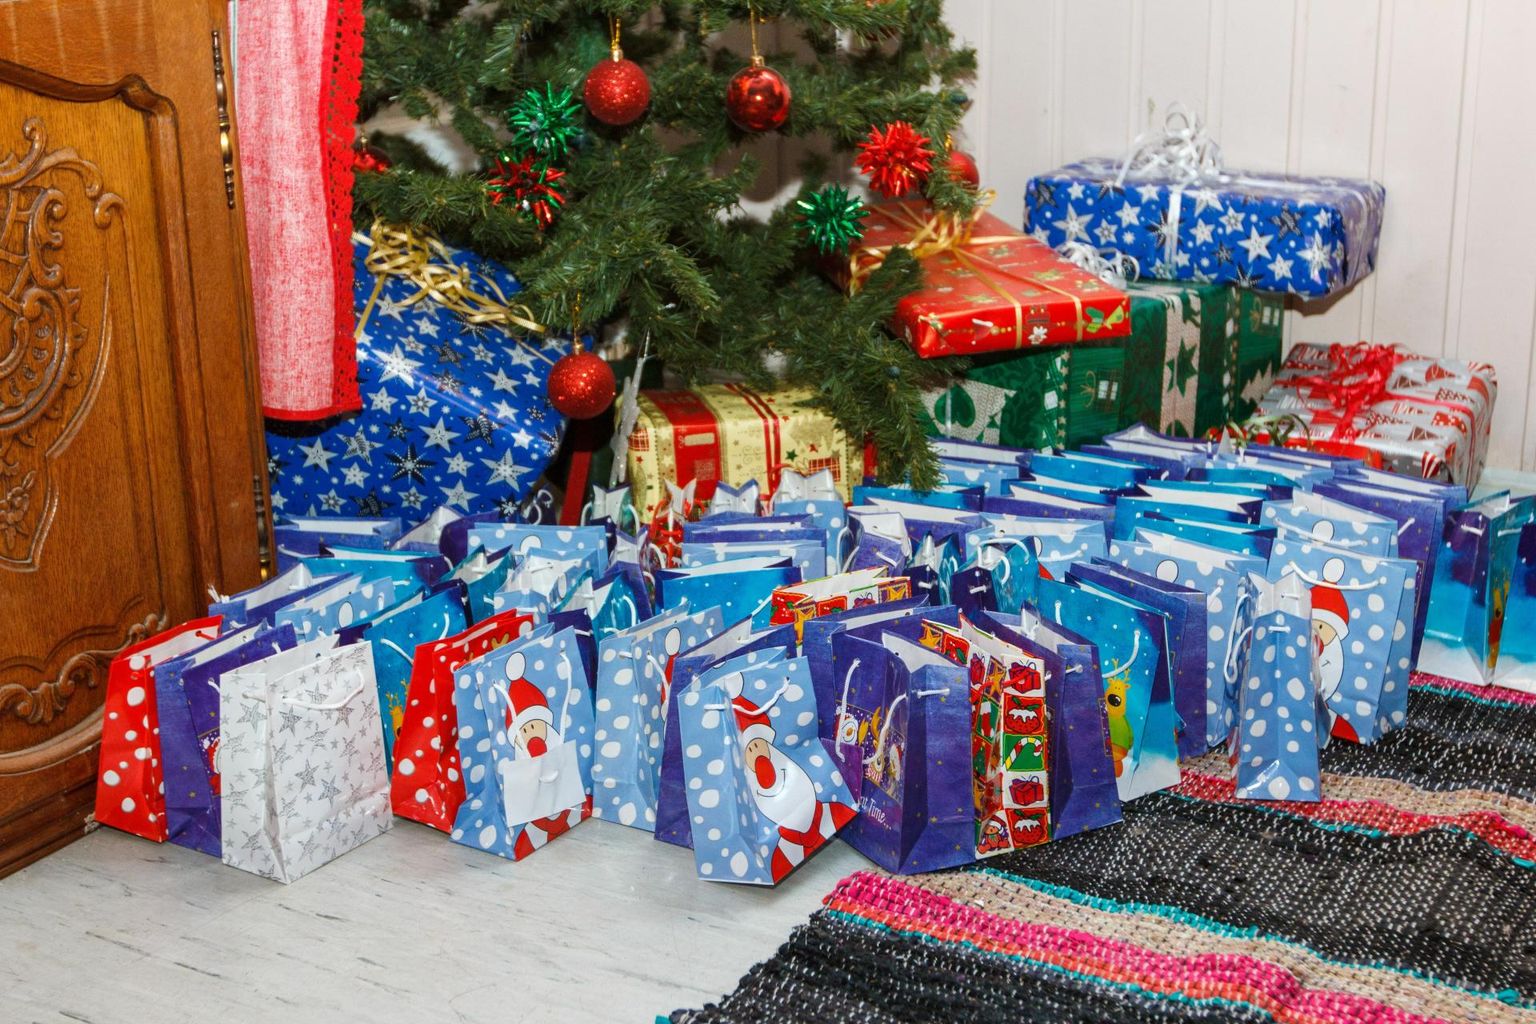 Põhja-Sakala vallas saavad jõuludeks kommipaki nii eelkooliealised kui põhikooliõpilased.